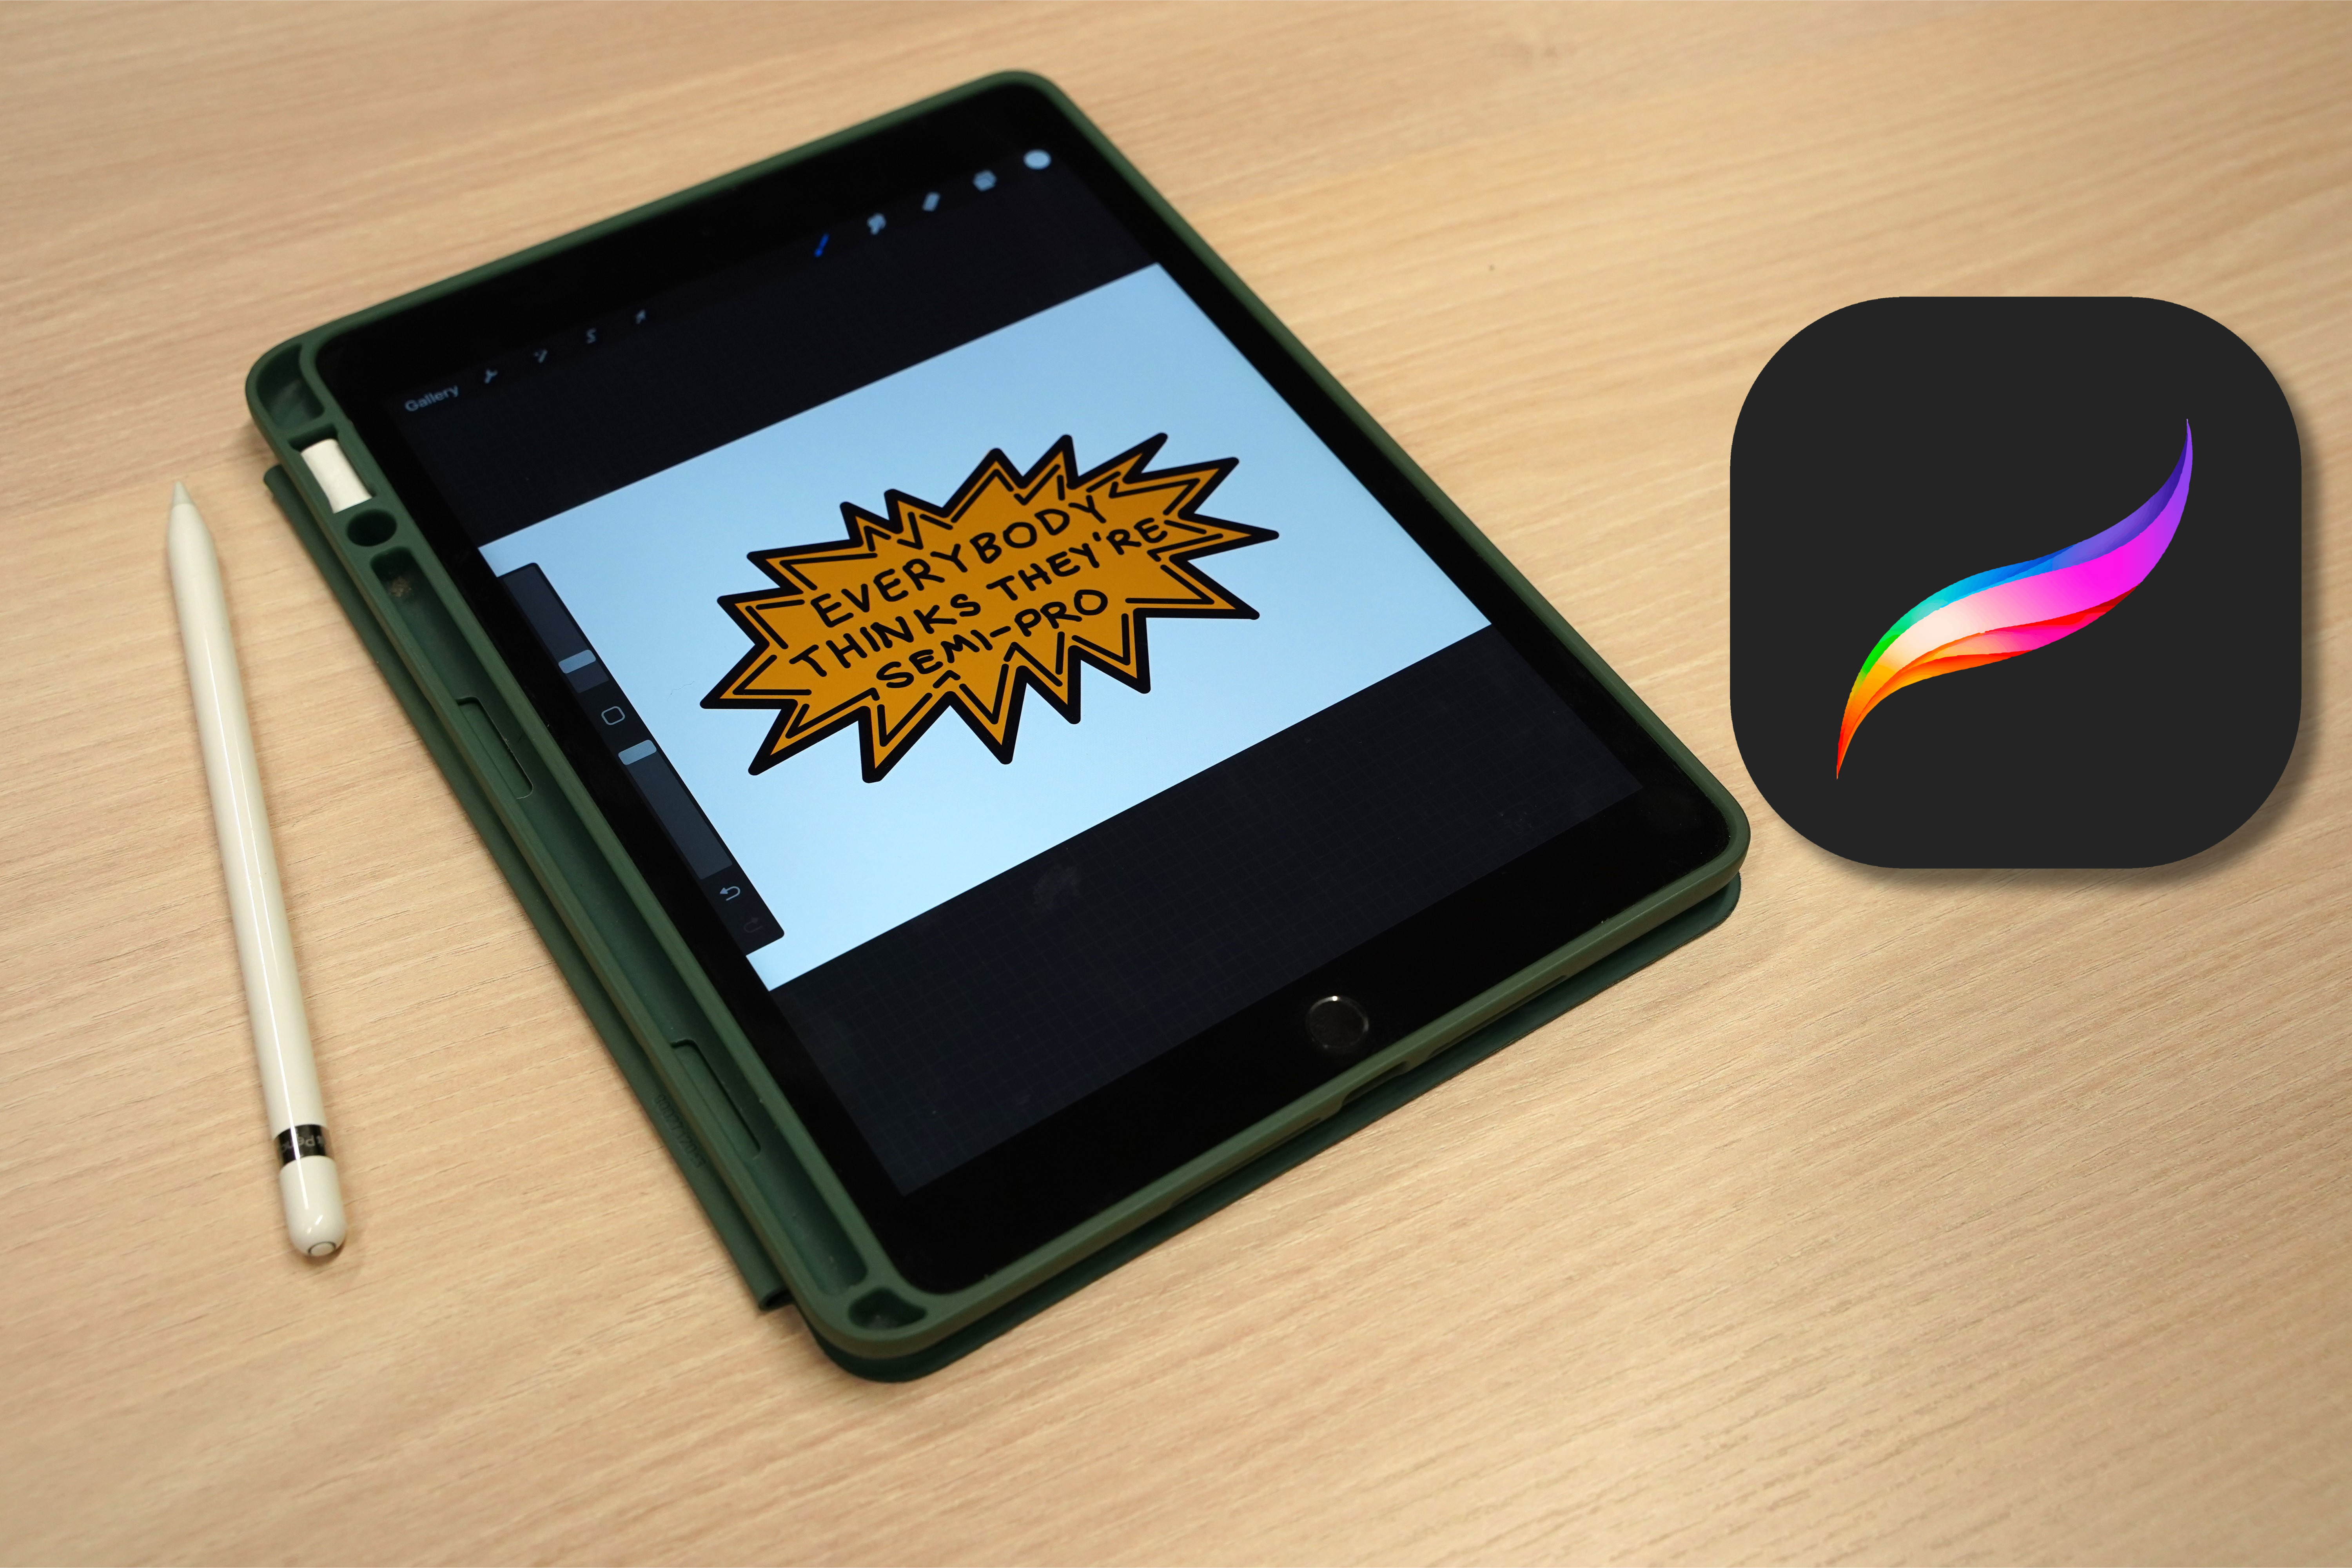 "Sticker erstellen mit der Procreate App fürs iPad" – Online-Workshop